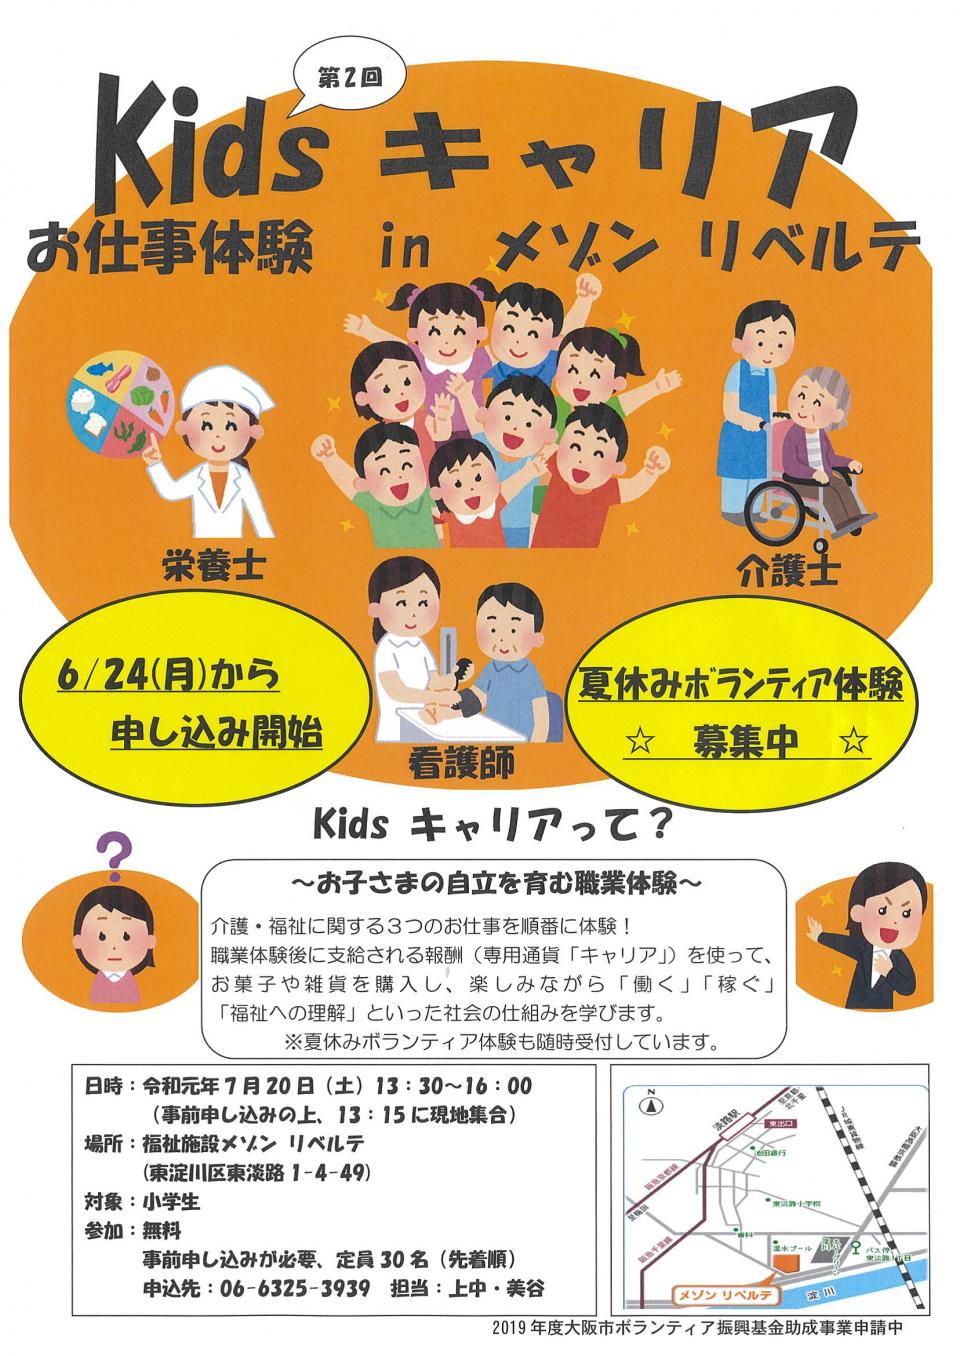 Kidsキャリア開催！！